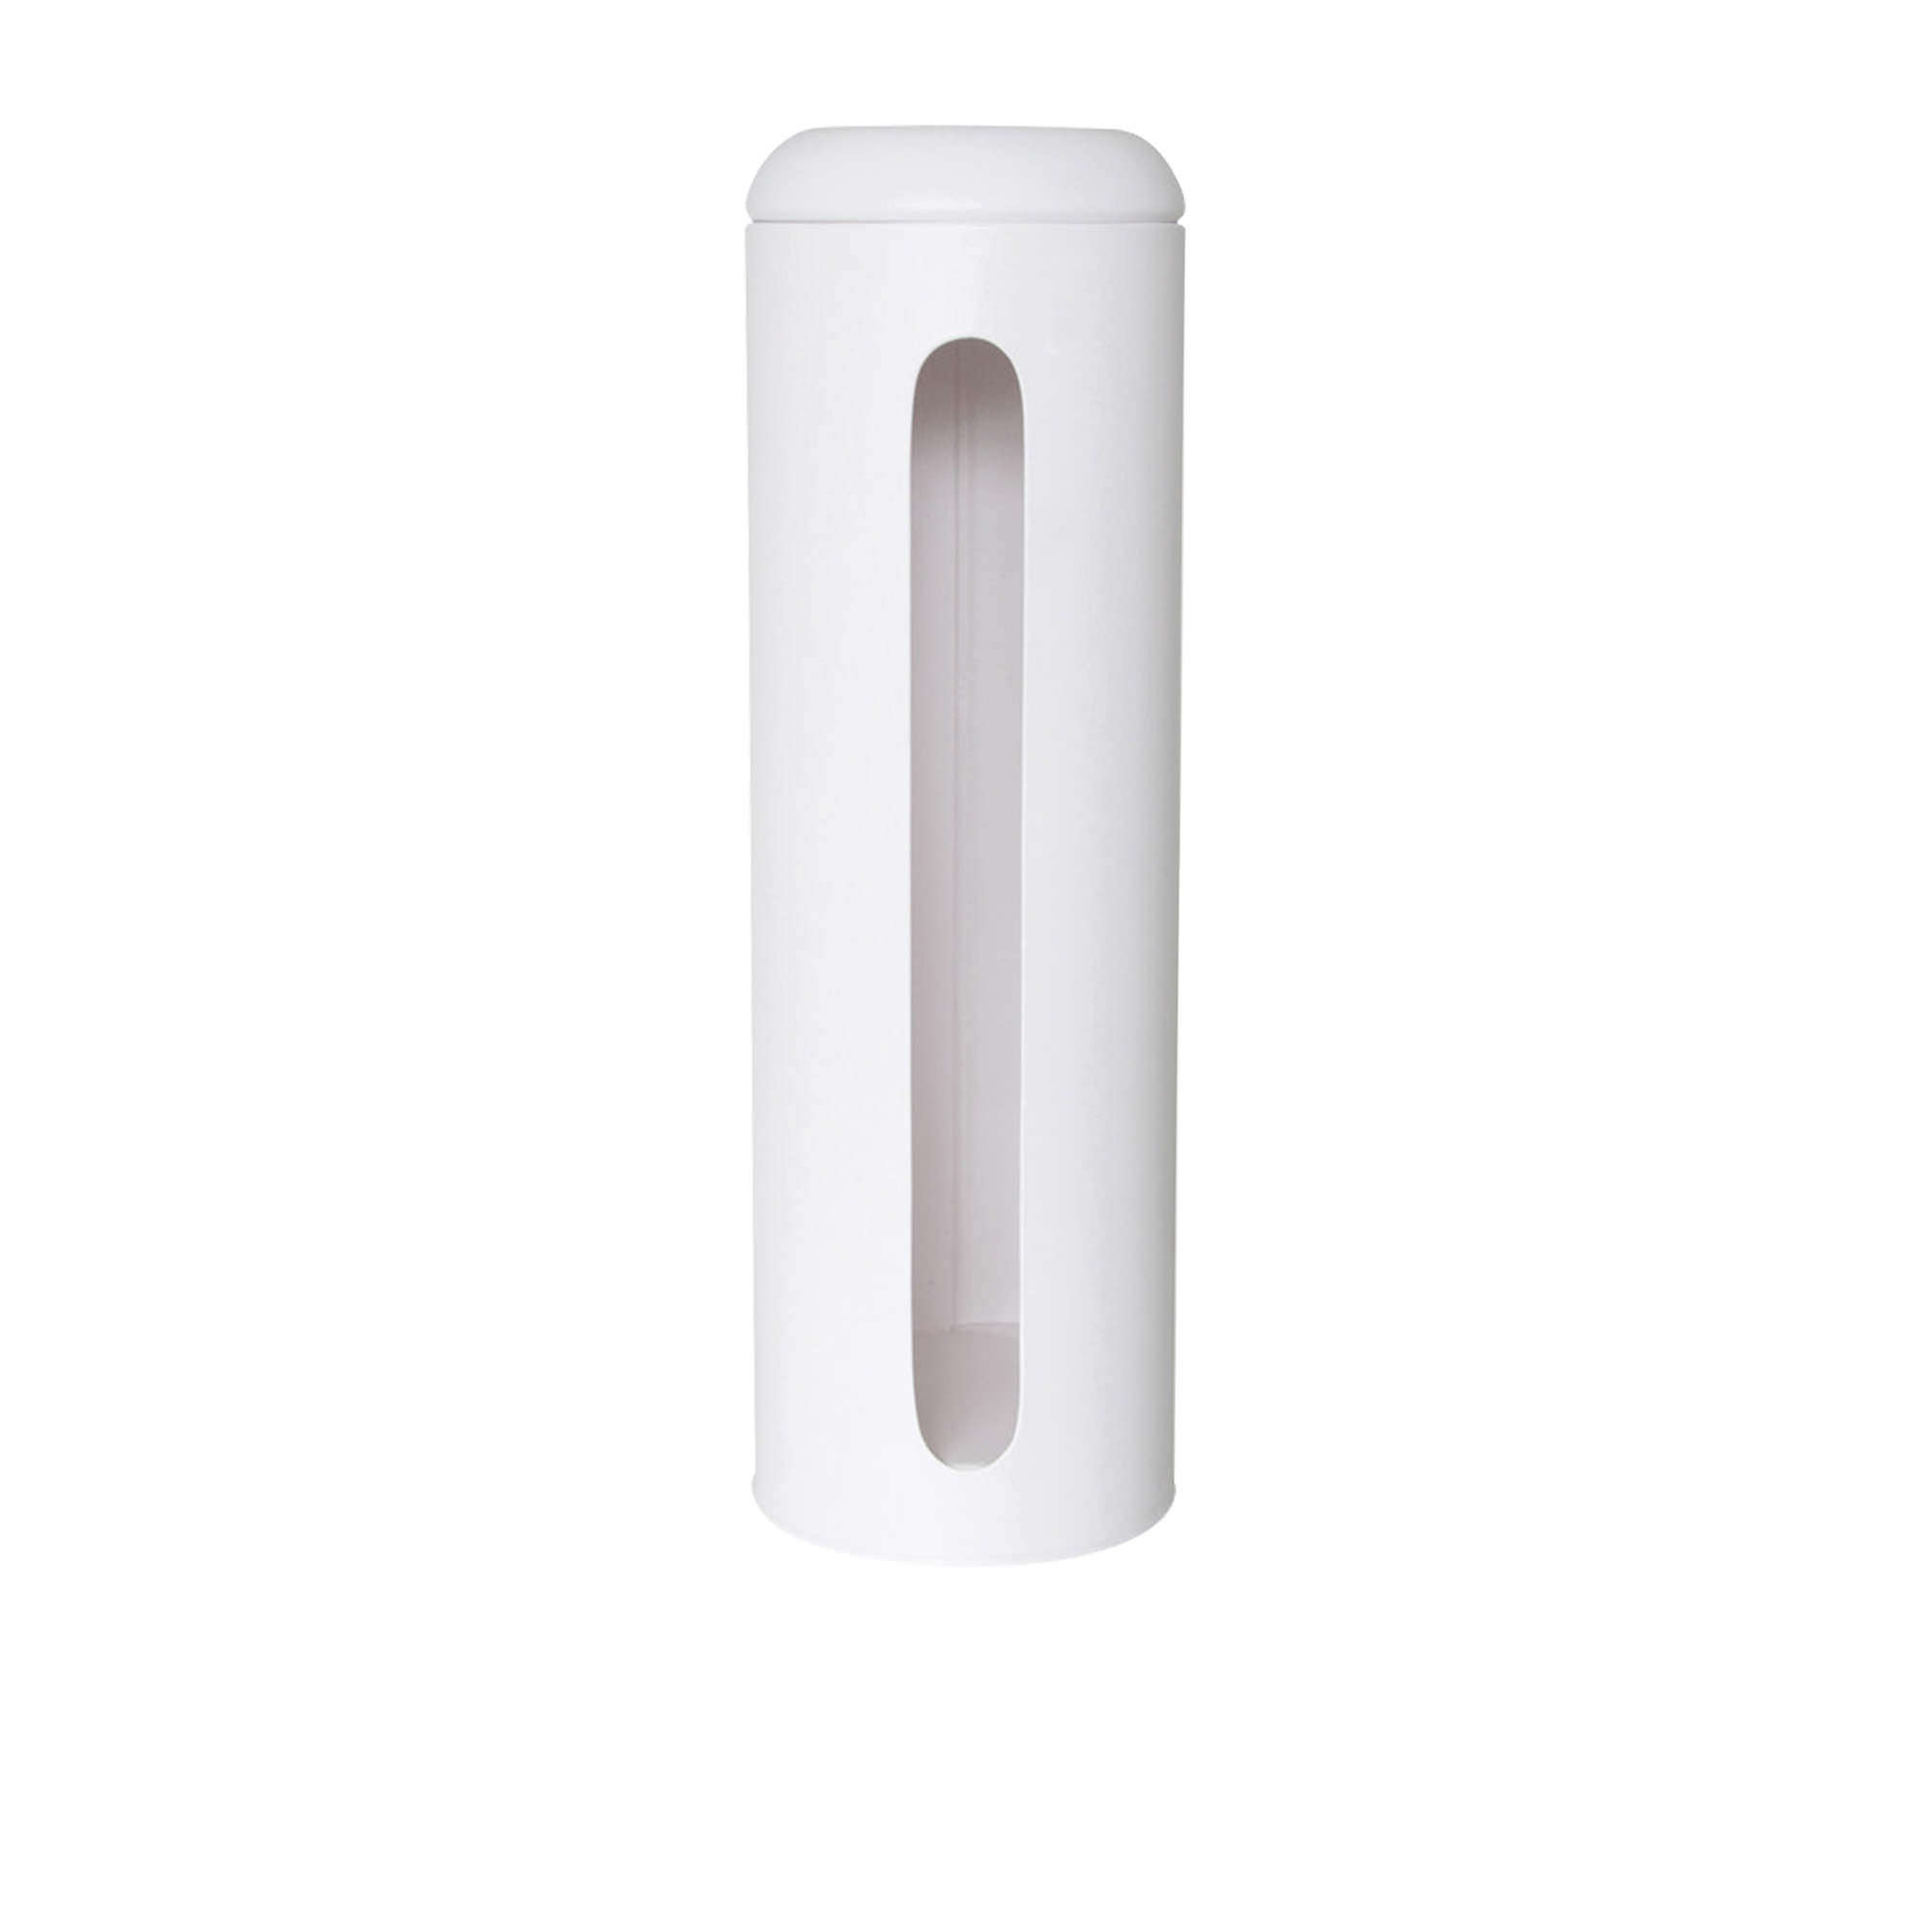 Salt & Pepper Suds Metal Toilet Paper Roll Holder White Image 1